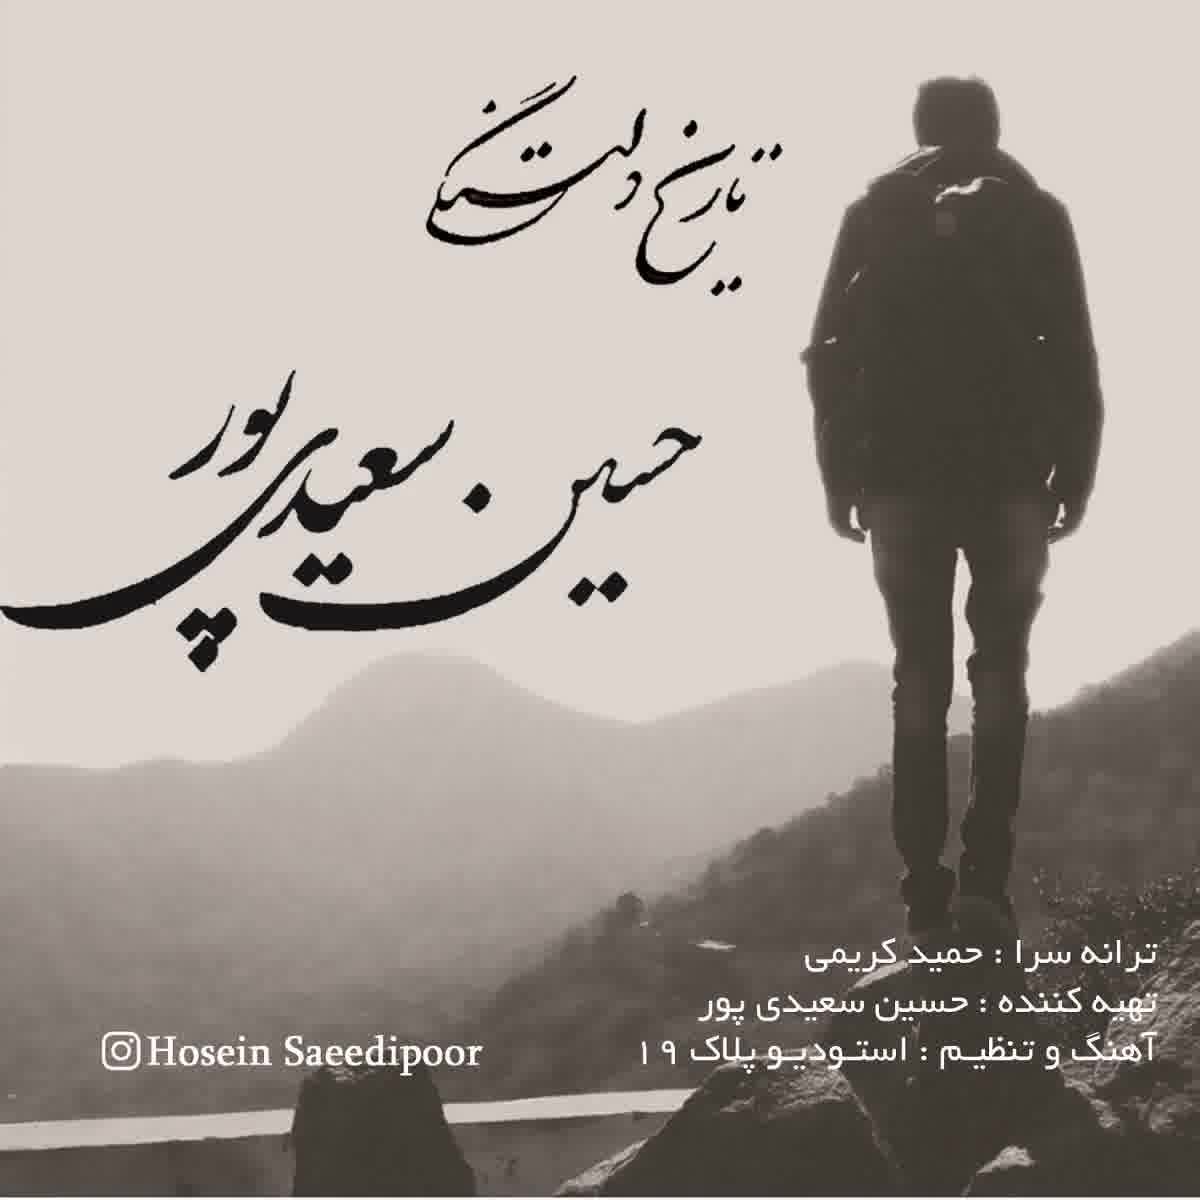 حسین سعیدی پور تاریخ دلتنگی , جدیدترین آهنگ اردیبهشت غمگین